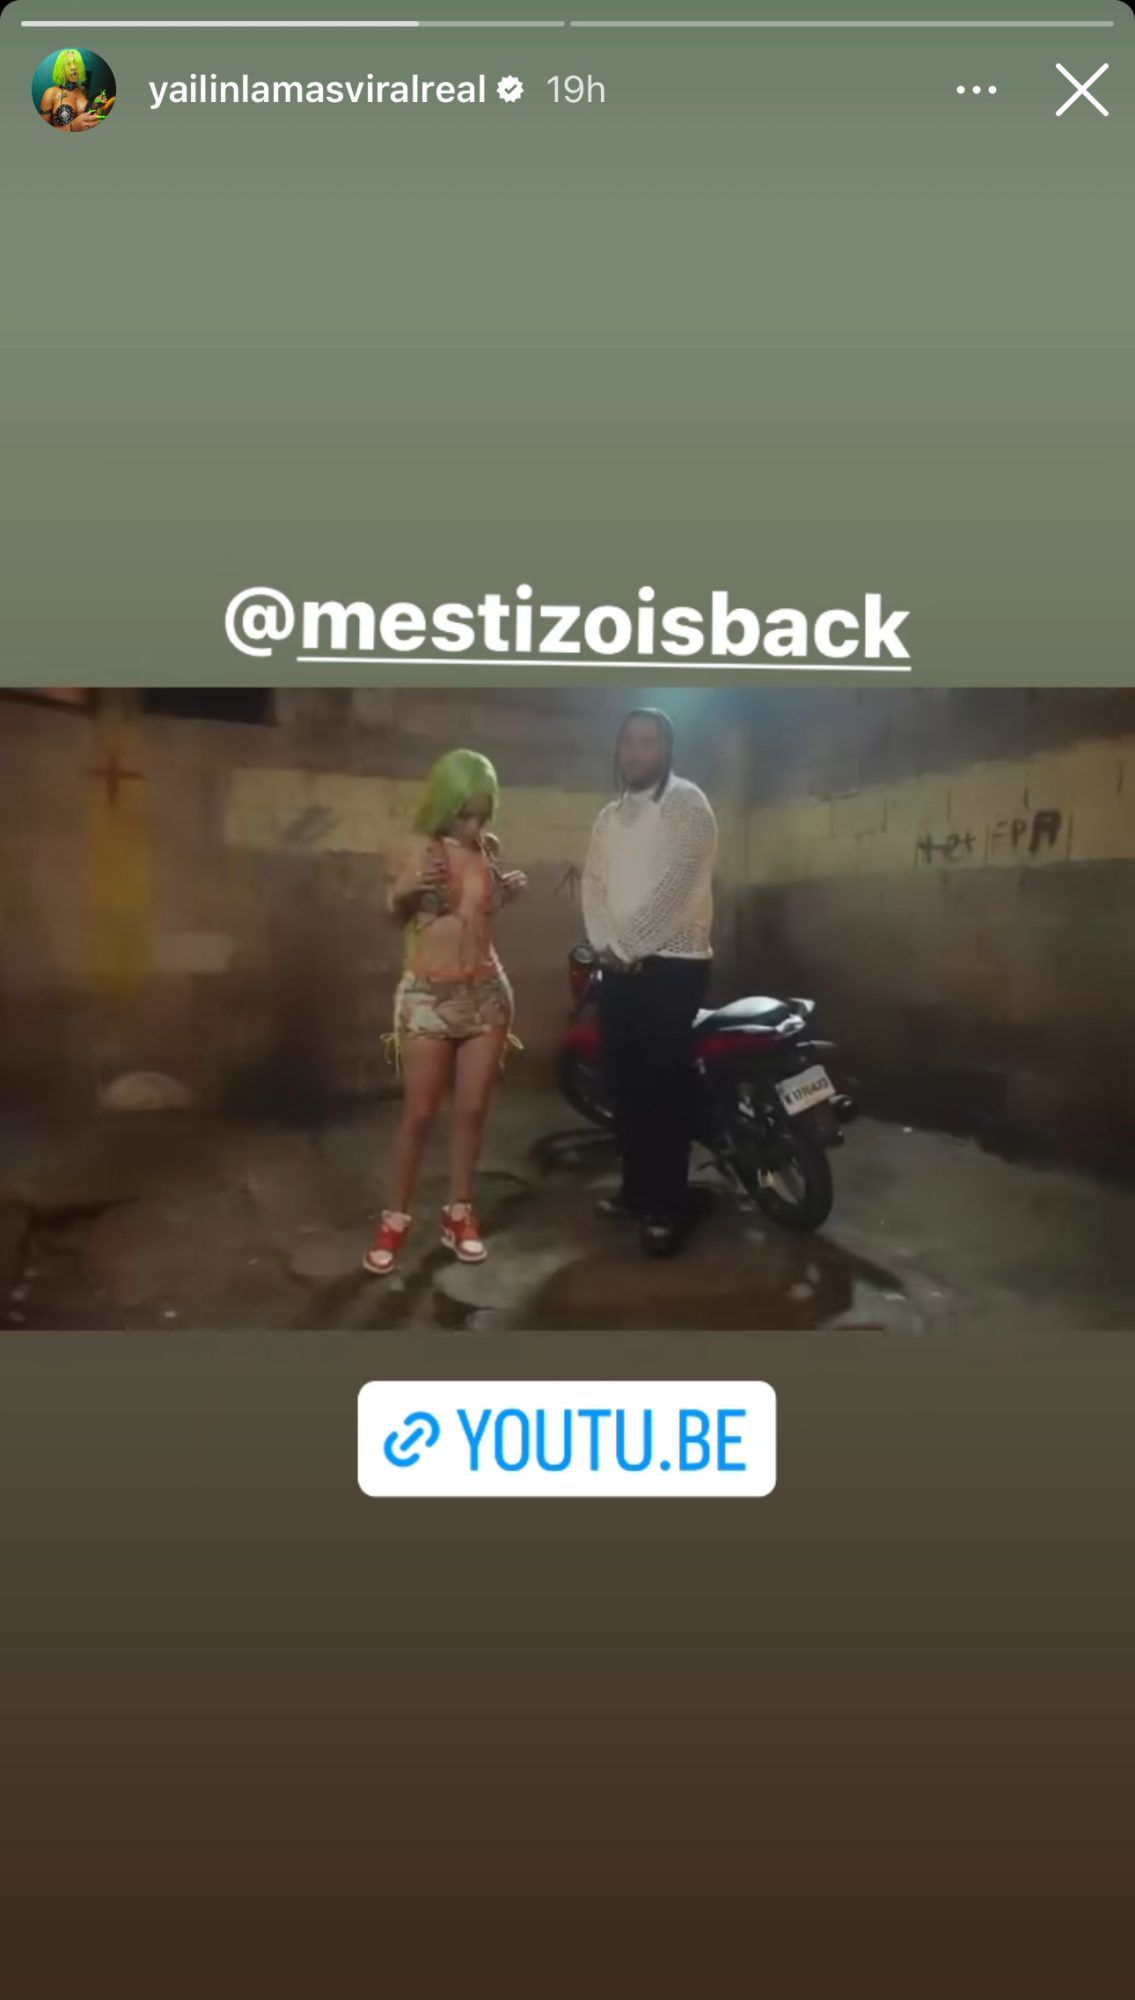 Yailin y Mestizo is back